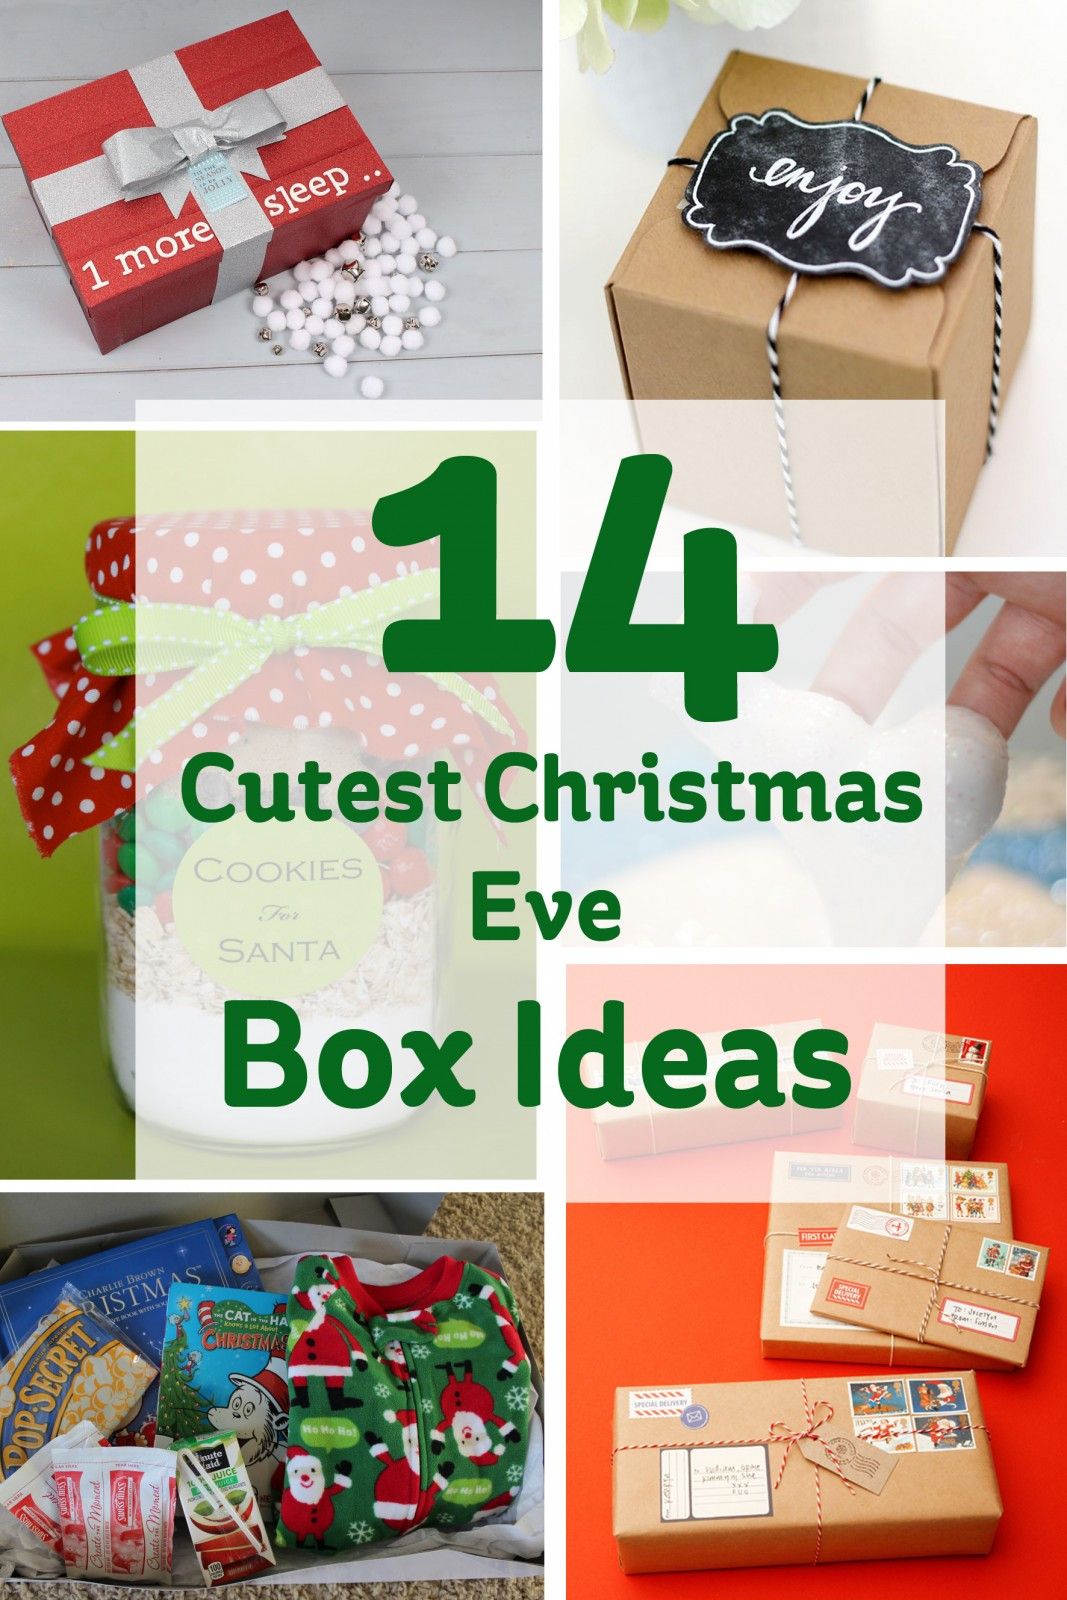 Christmas Gift Boxes Ideas
 The 14 Cutest Christmas Eve Box Ideas Hobbycraft Blog